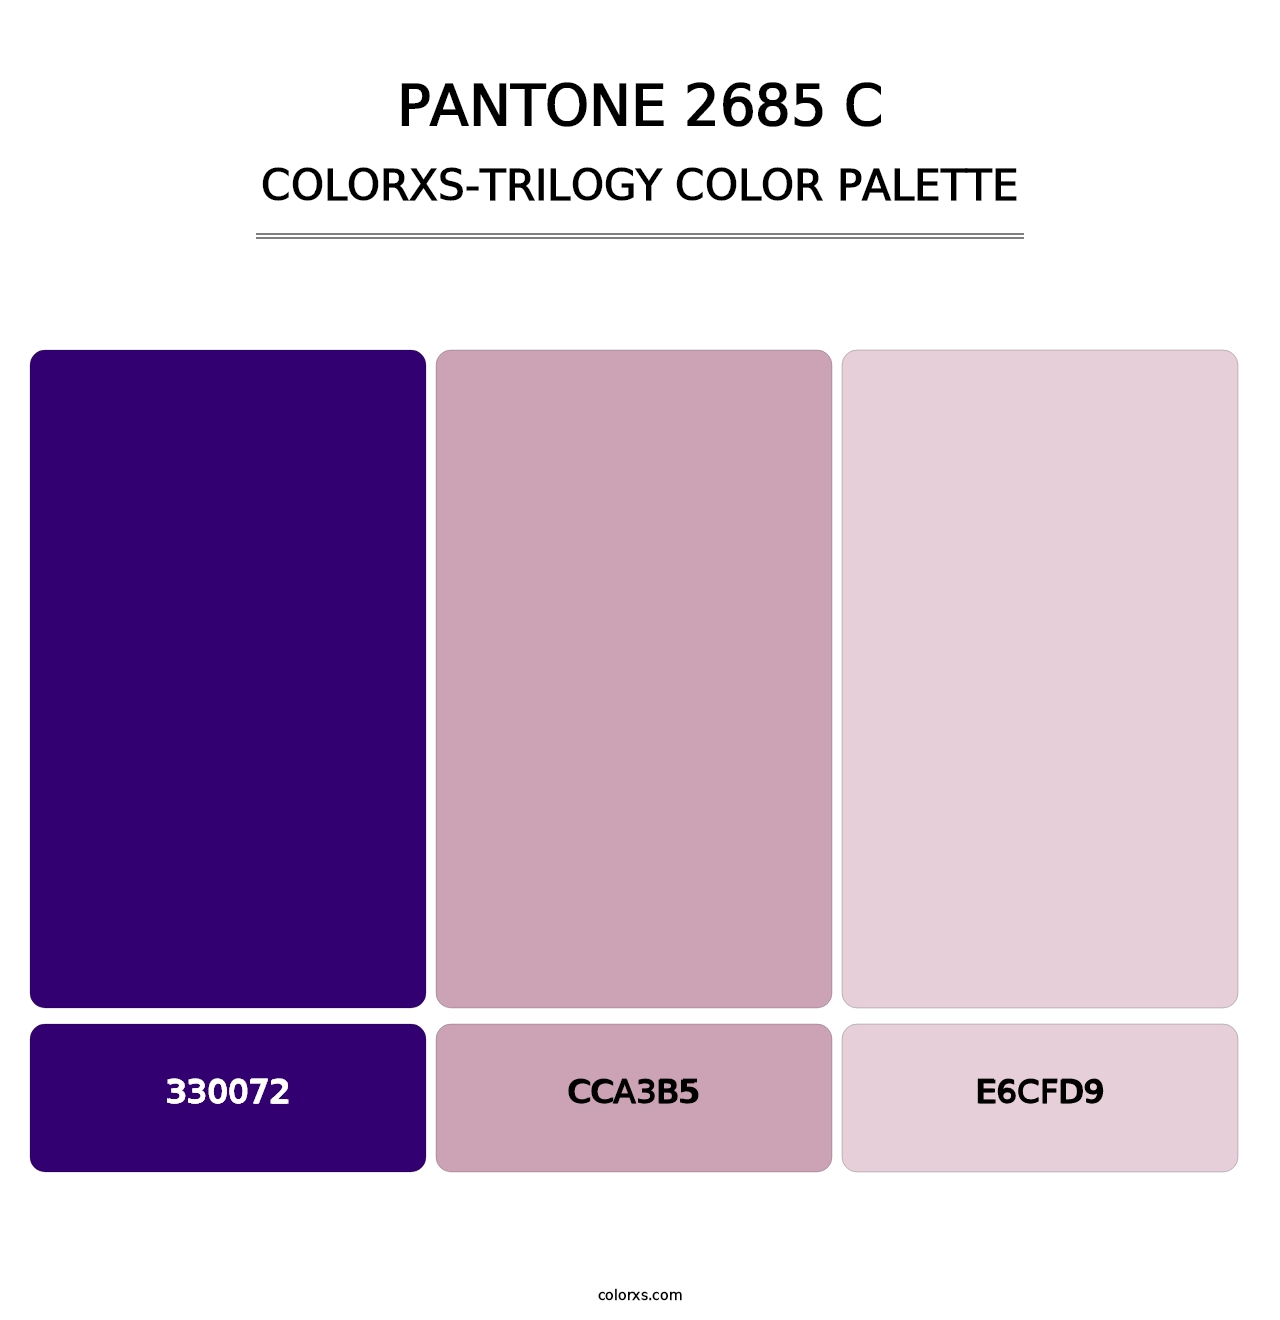 PANTONE 2685 C - Colorxs Trilogy Palette